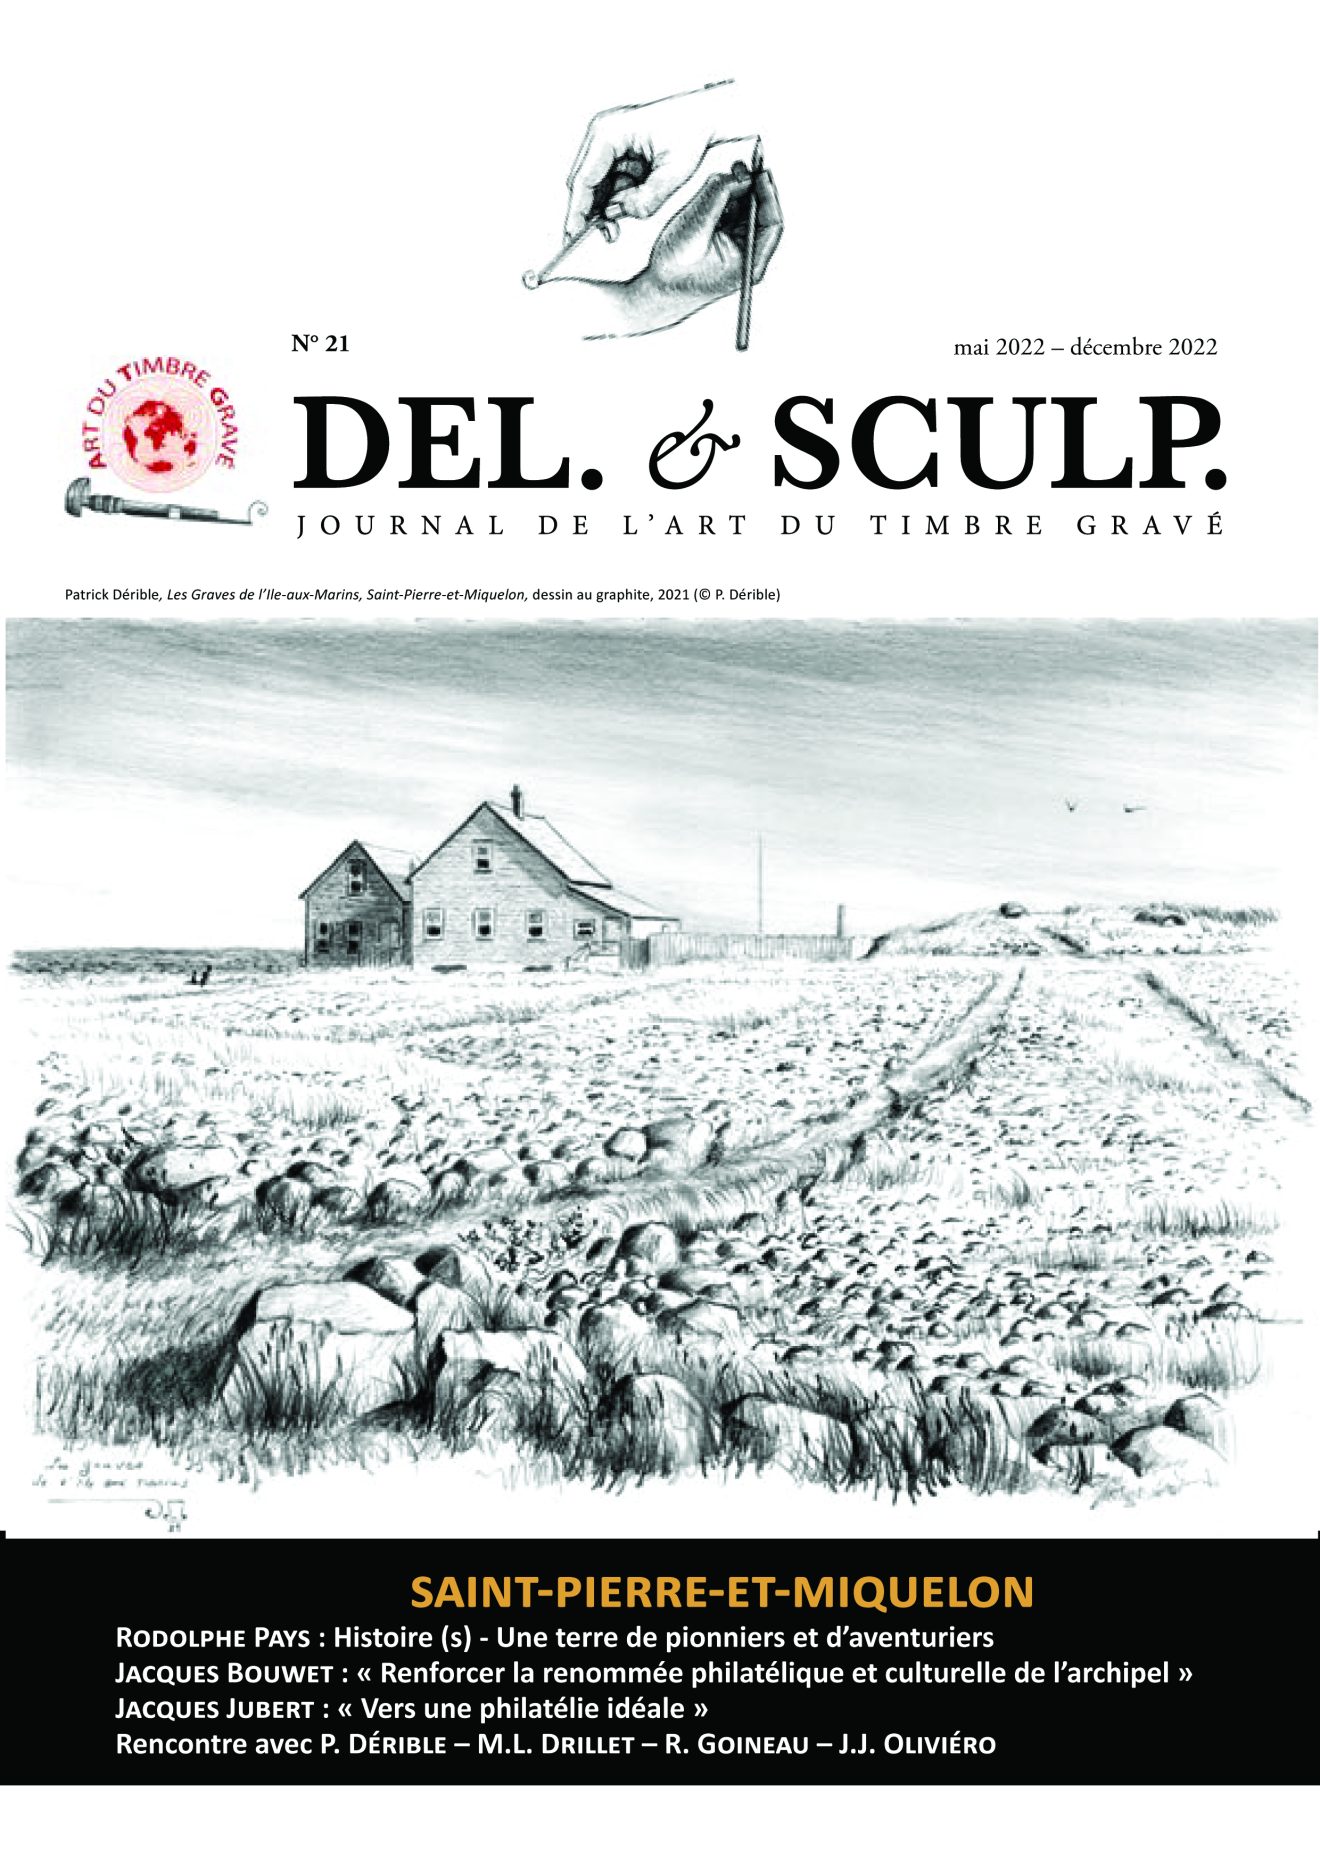 Del. et Sculp. de juin 2022 est un numéro spécial Saint-Pierre-et-Miquelon